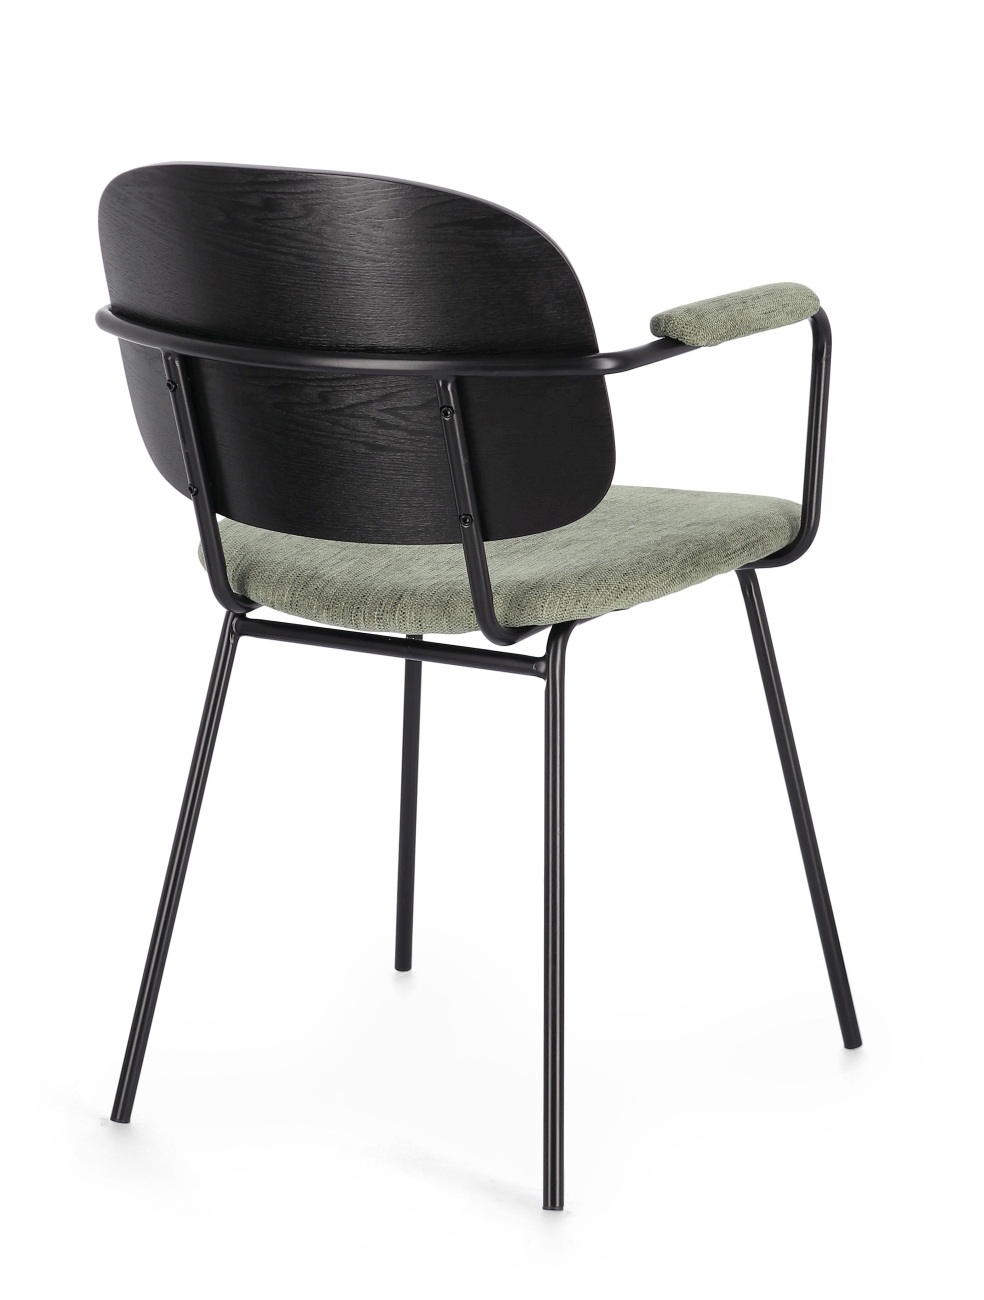 Der Esszimmerstuhl Sienna überzeugt mit seinem modernen Stil. Gefertigt wurde er aus Stoff, welcher einen grünen Farbton besitzt. Das Gestell ist aus Metall und hat eine schwarze Farbe. Der Stuhl besitzt eine Sitzhöhe von 48 cm.